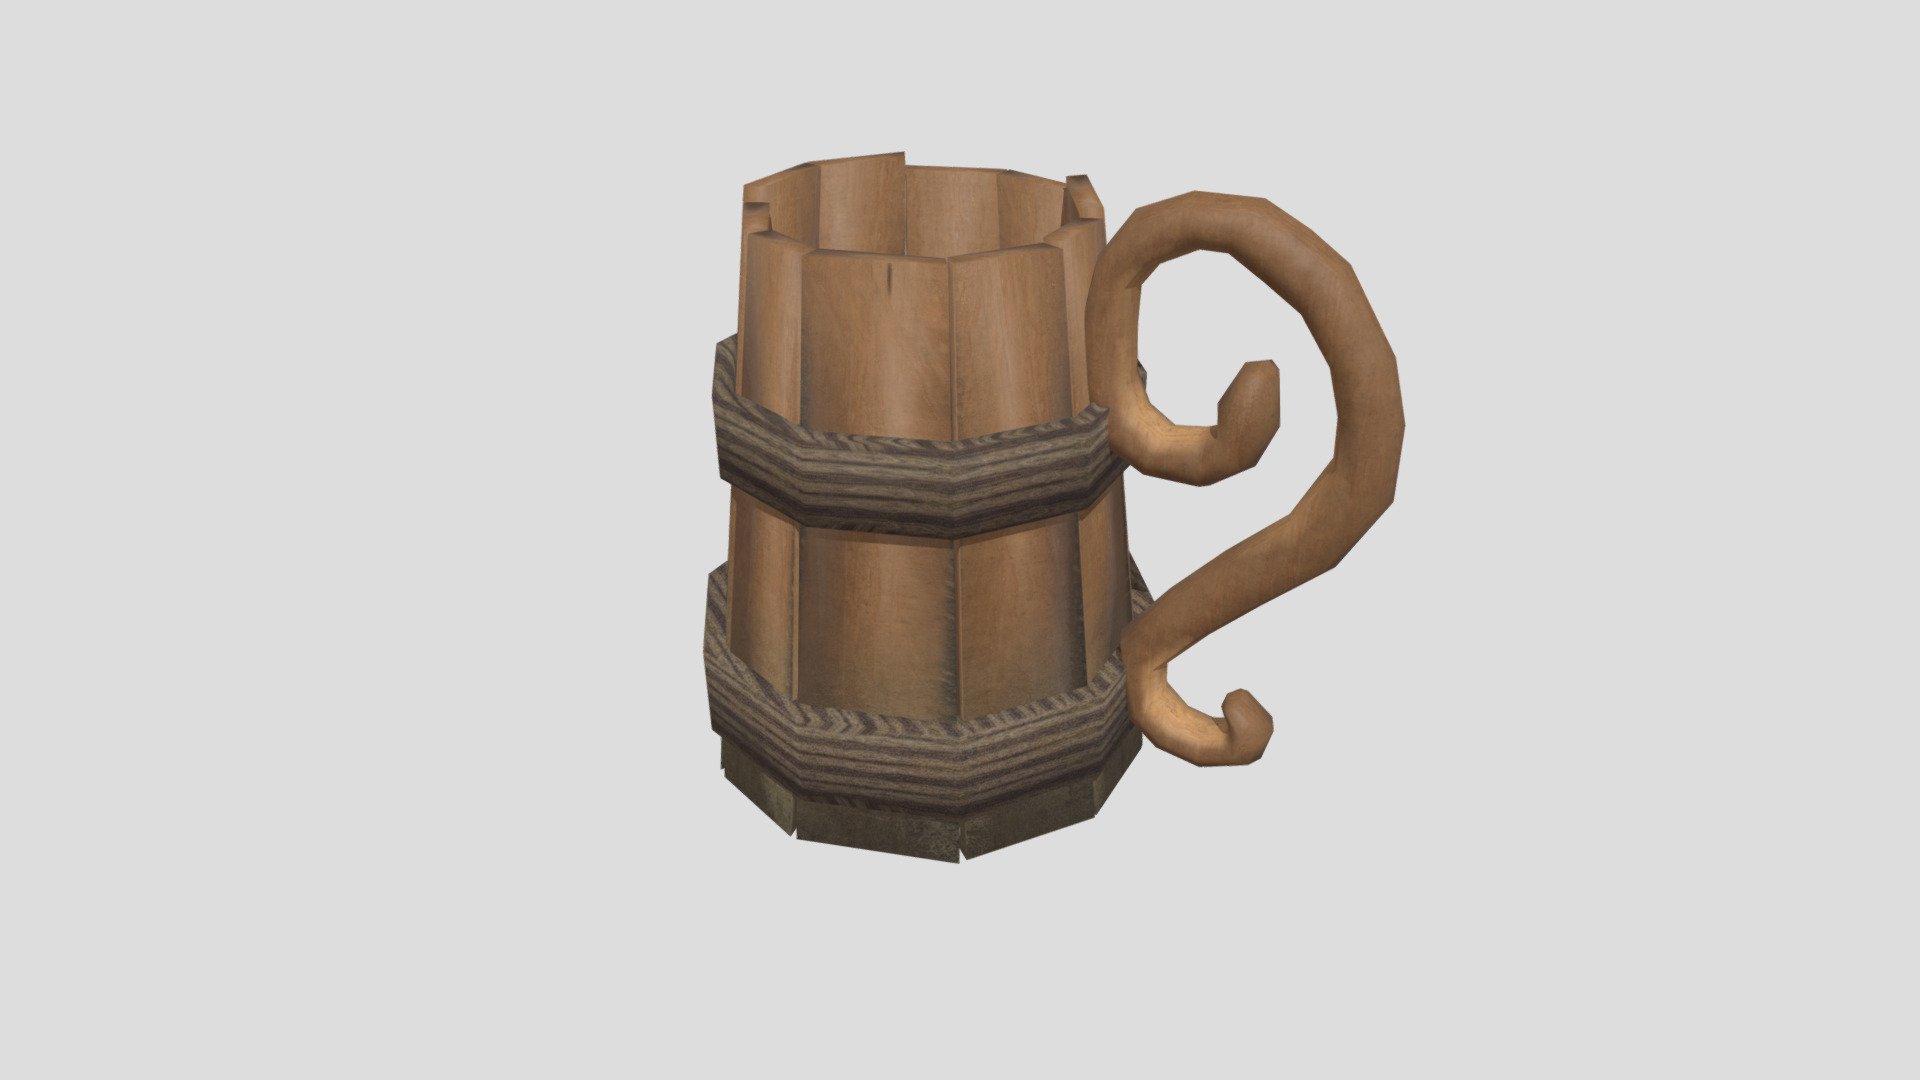 ArtStation - Blender Mug Free 3D Model for Blender